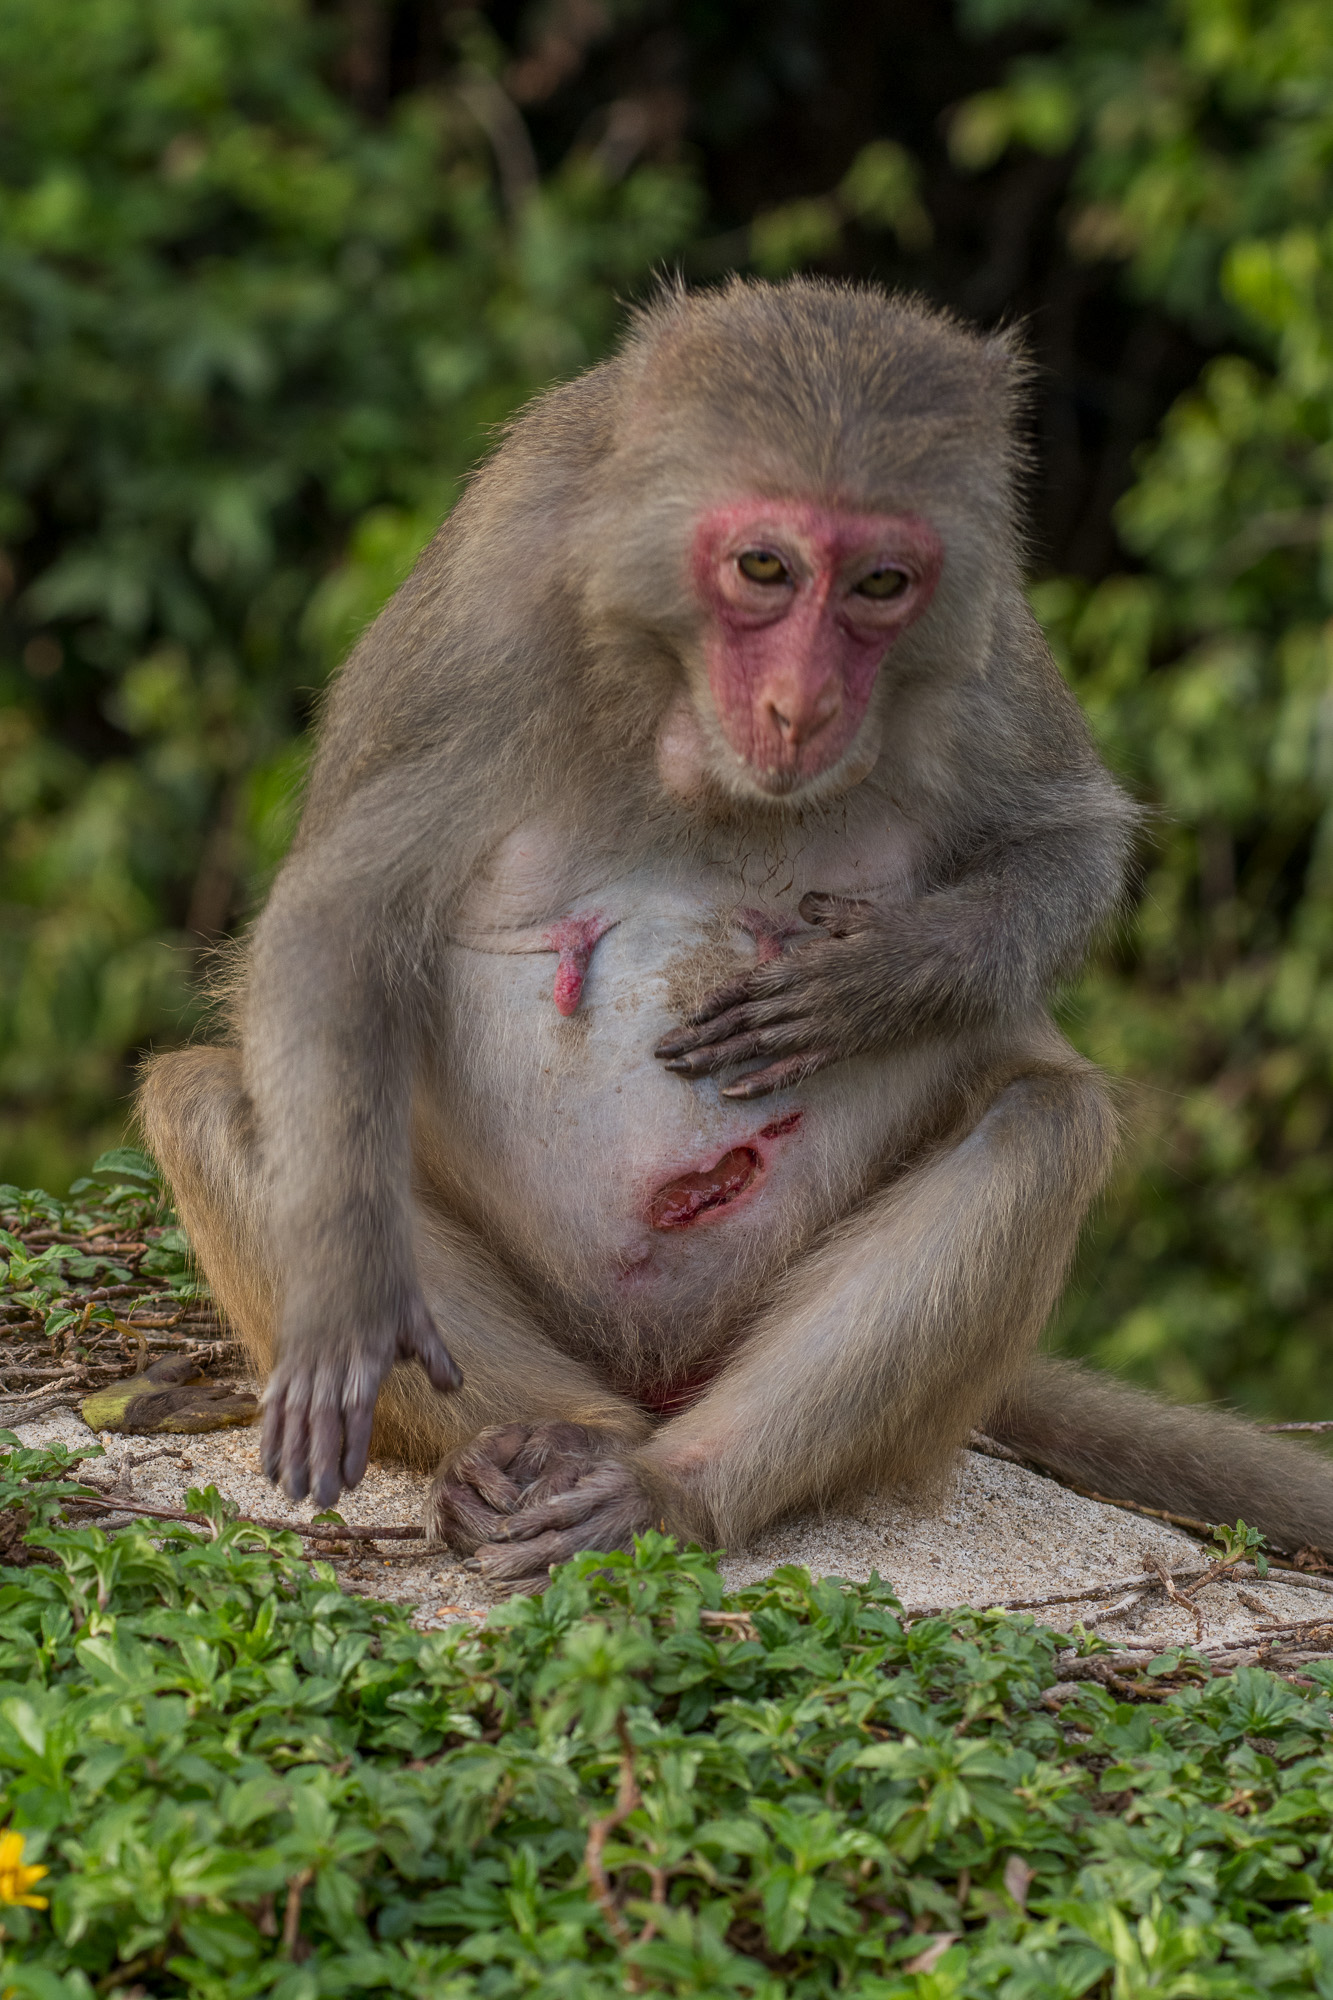 Hình ảnh khỉ con đầy thương tích và sống lay lắt sẽ khiến bạn cảm động và xót xa. Hãy xem và cảm nhận sự mạnh mẽ, kiên cường của chúng qua hình ảnh chân thực!